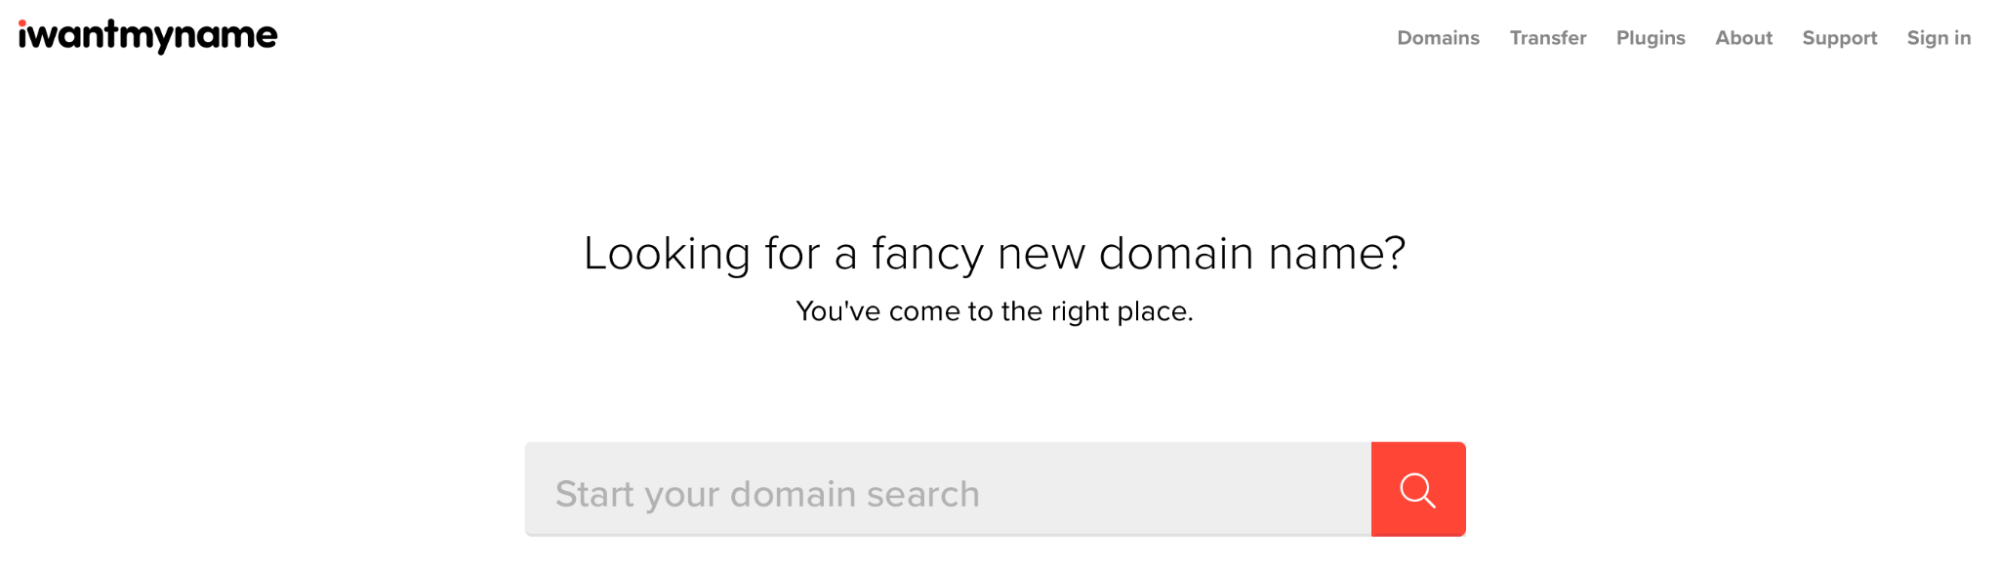 iwantmyname domain search tool